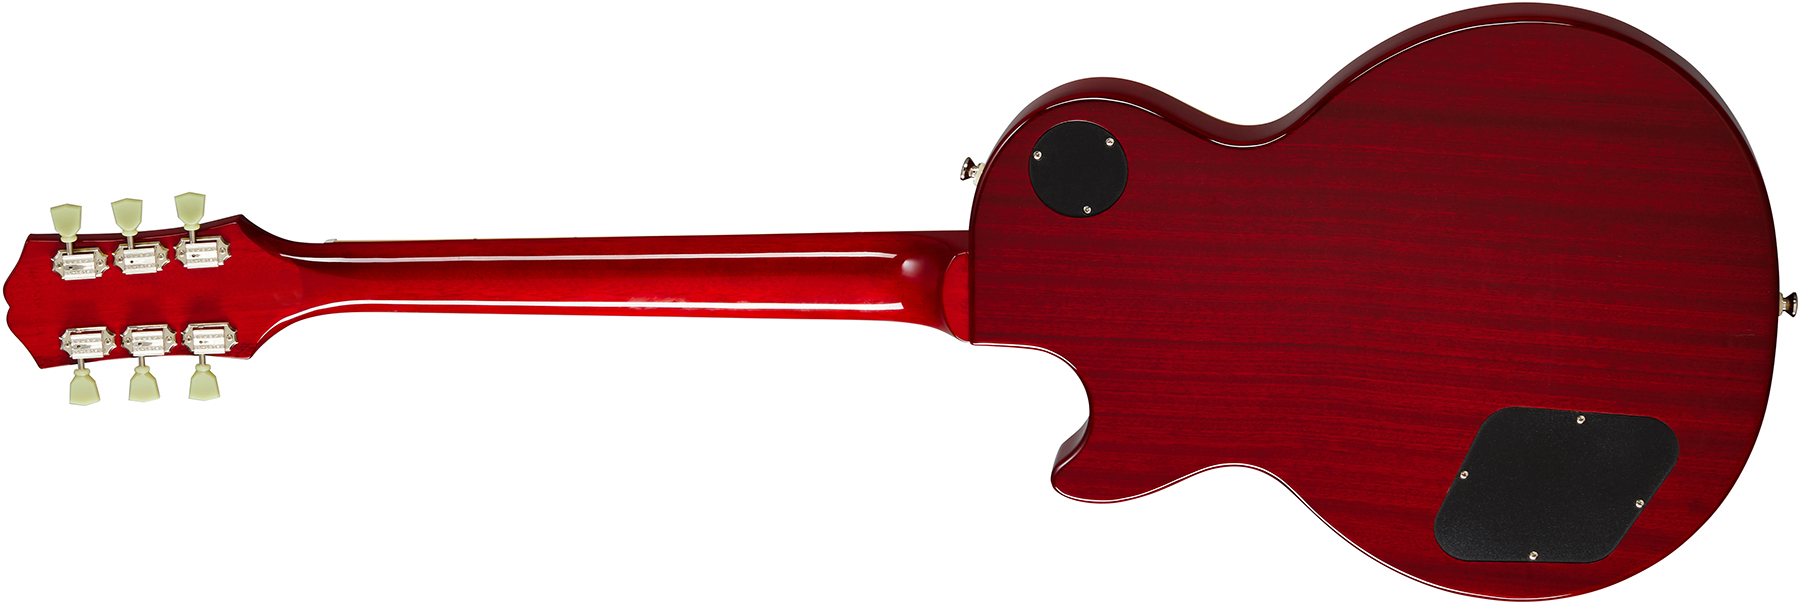 Epiphone Les Paul Standard 50s 2h Ht Rw - Vintage Sunburst - Guitarra eléctrica de corte único. - Variation 2